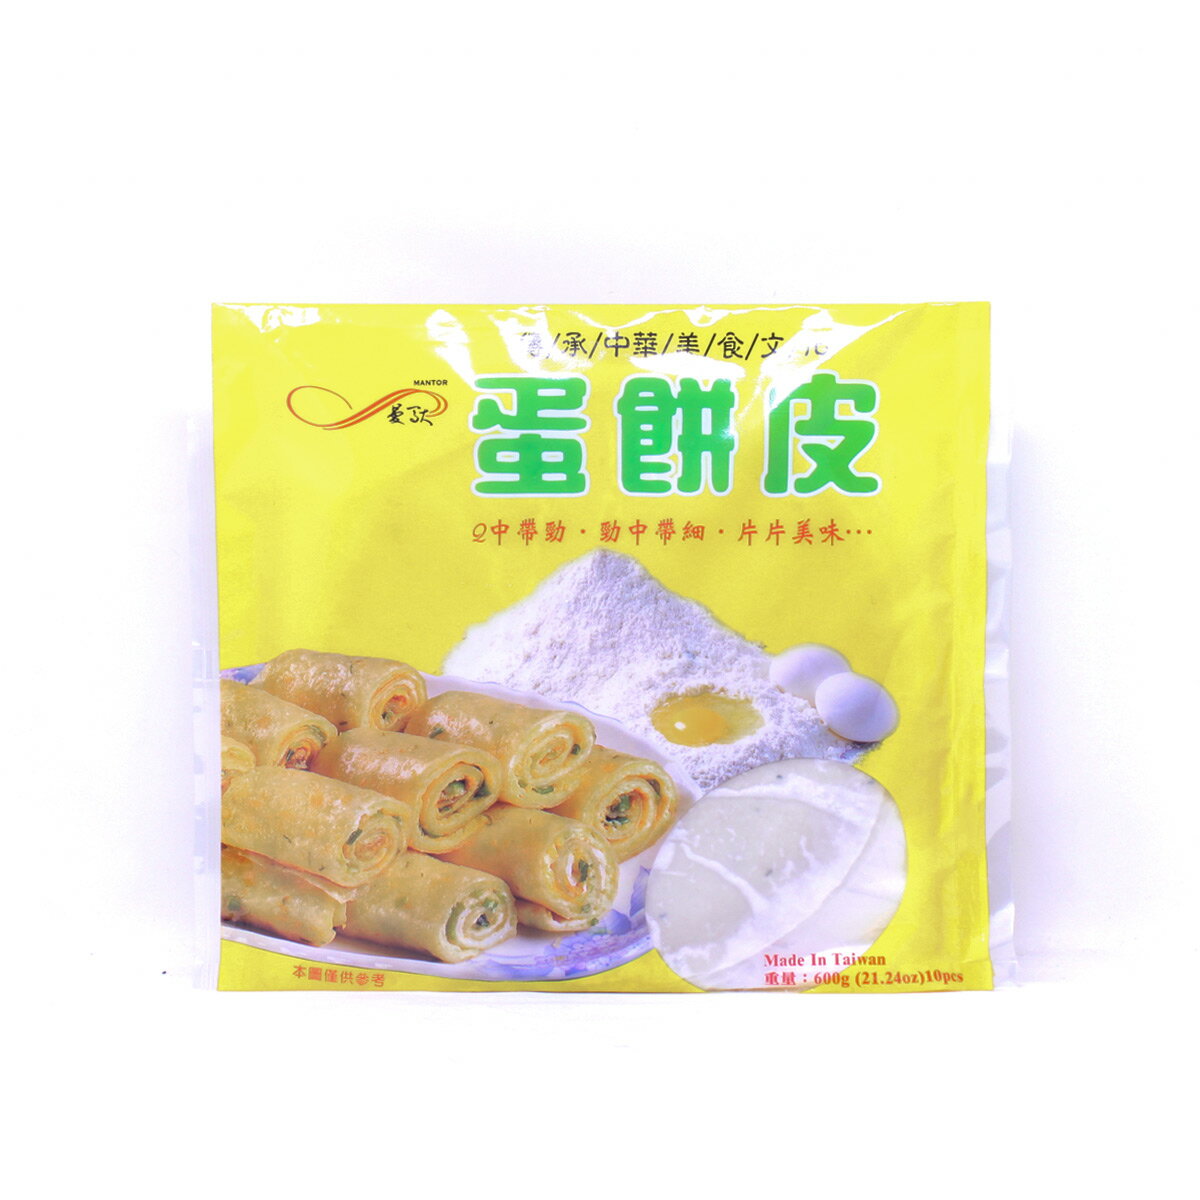 【送料無料】3点セット 台湾卵ネギパイ 3×10枚入 台湾特色名食蛋餅皮 中華食材 台湾料理 屋台料理 人気商品 お土産